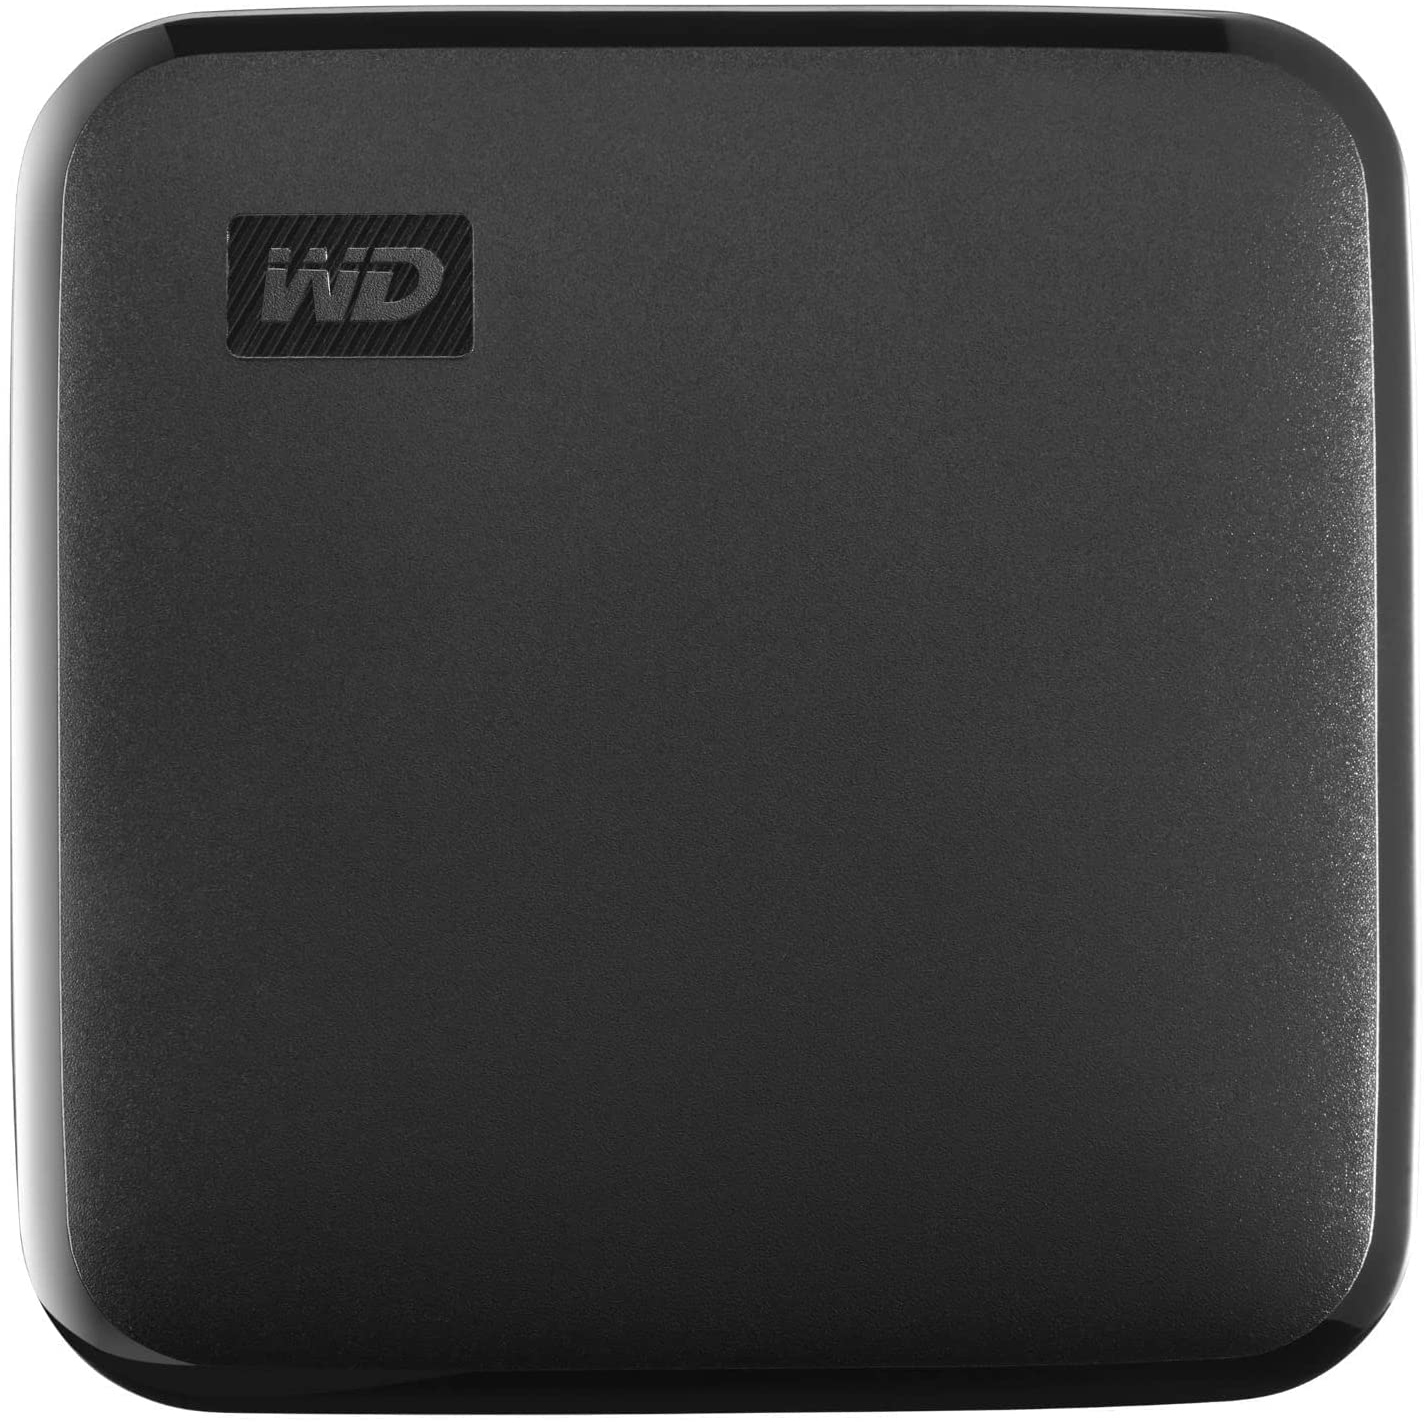 Original Sandisk Western Digital Elements Se 2Tb Usb 3.0 External Solid State Drive (WDBAYN0020BBK-WESN)